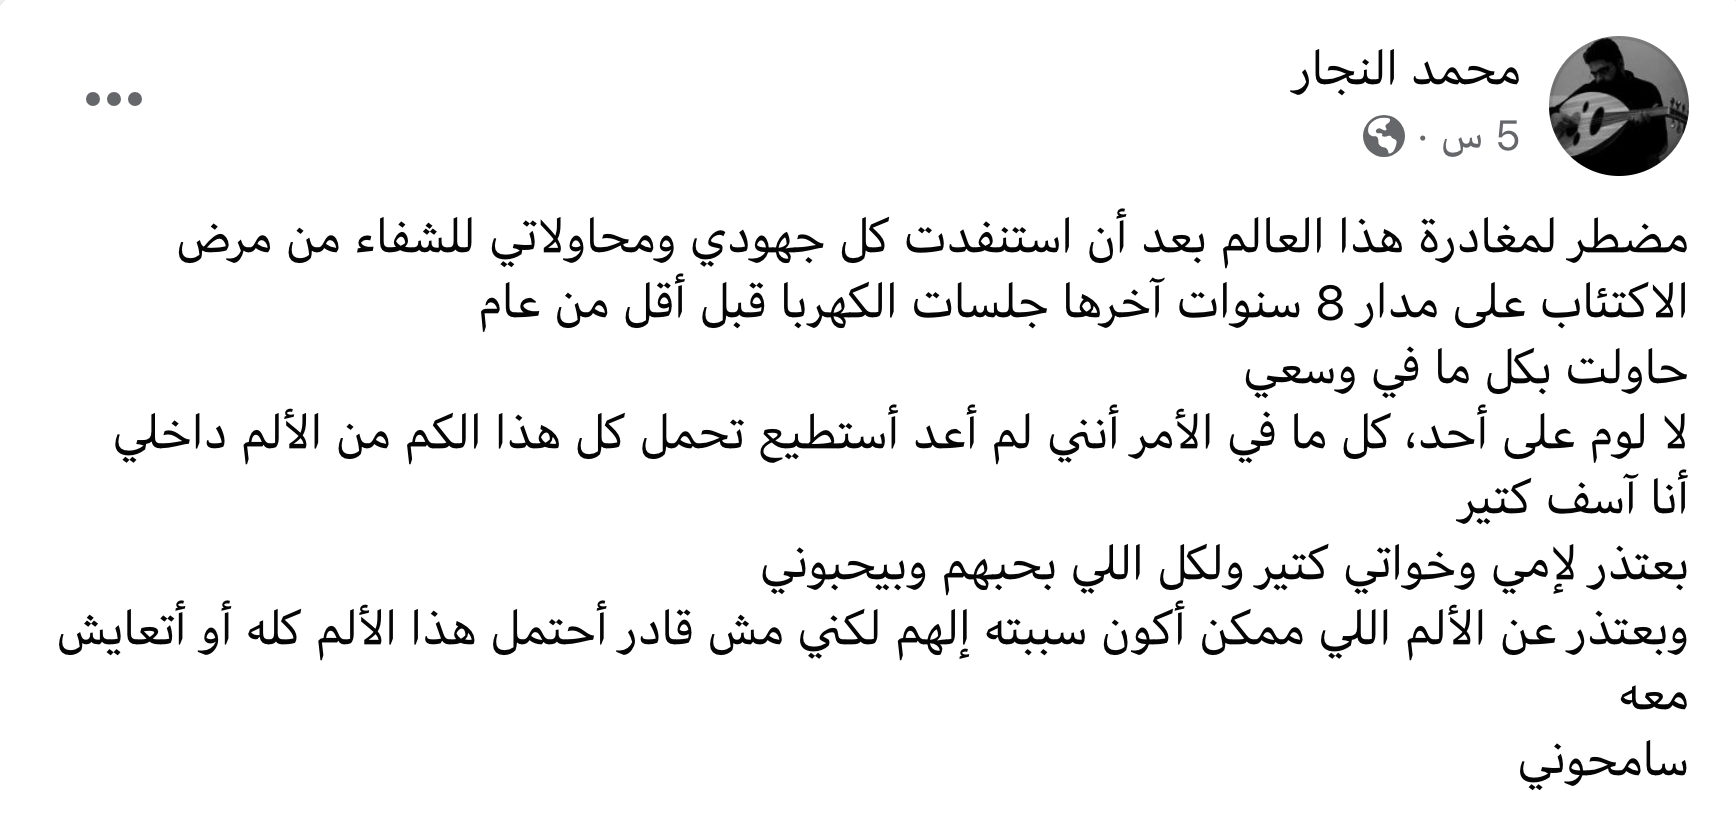 رسالة مؤثرة تركها الشاب محمد نبيل النجار خلفه بعد انتحاره